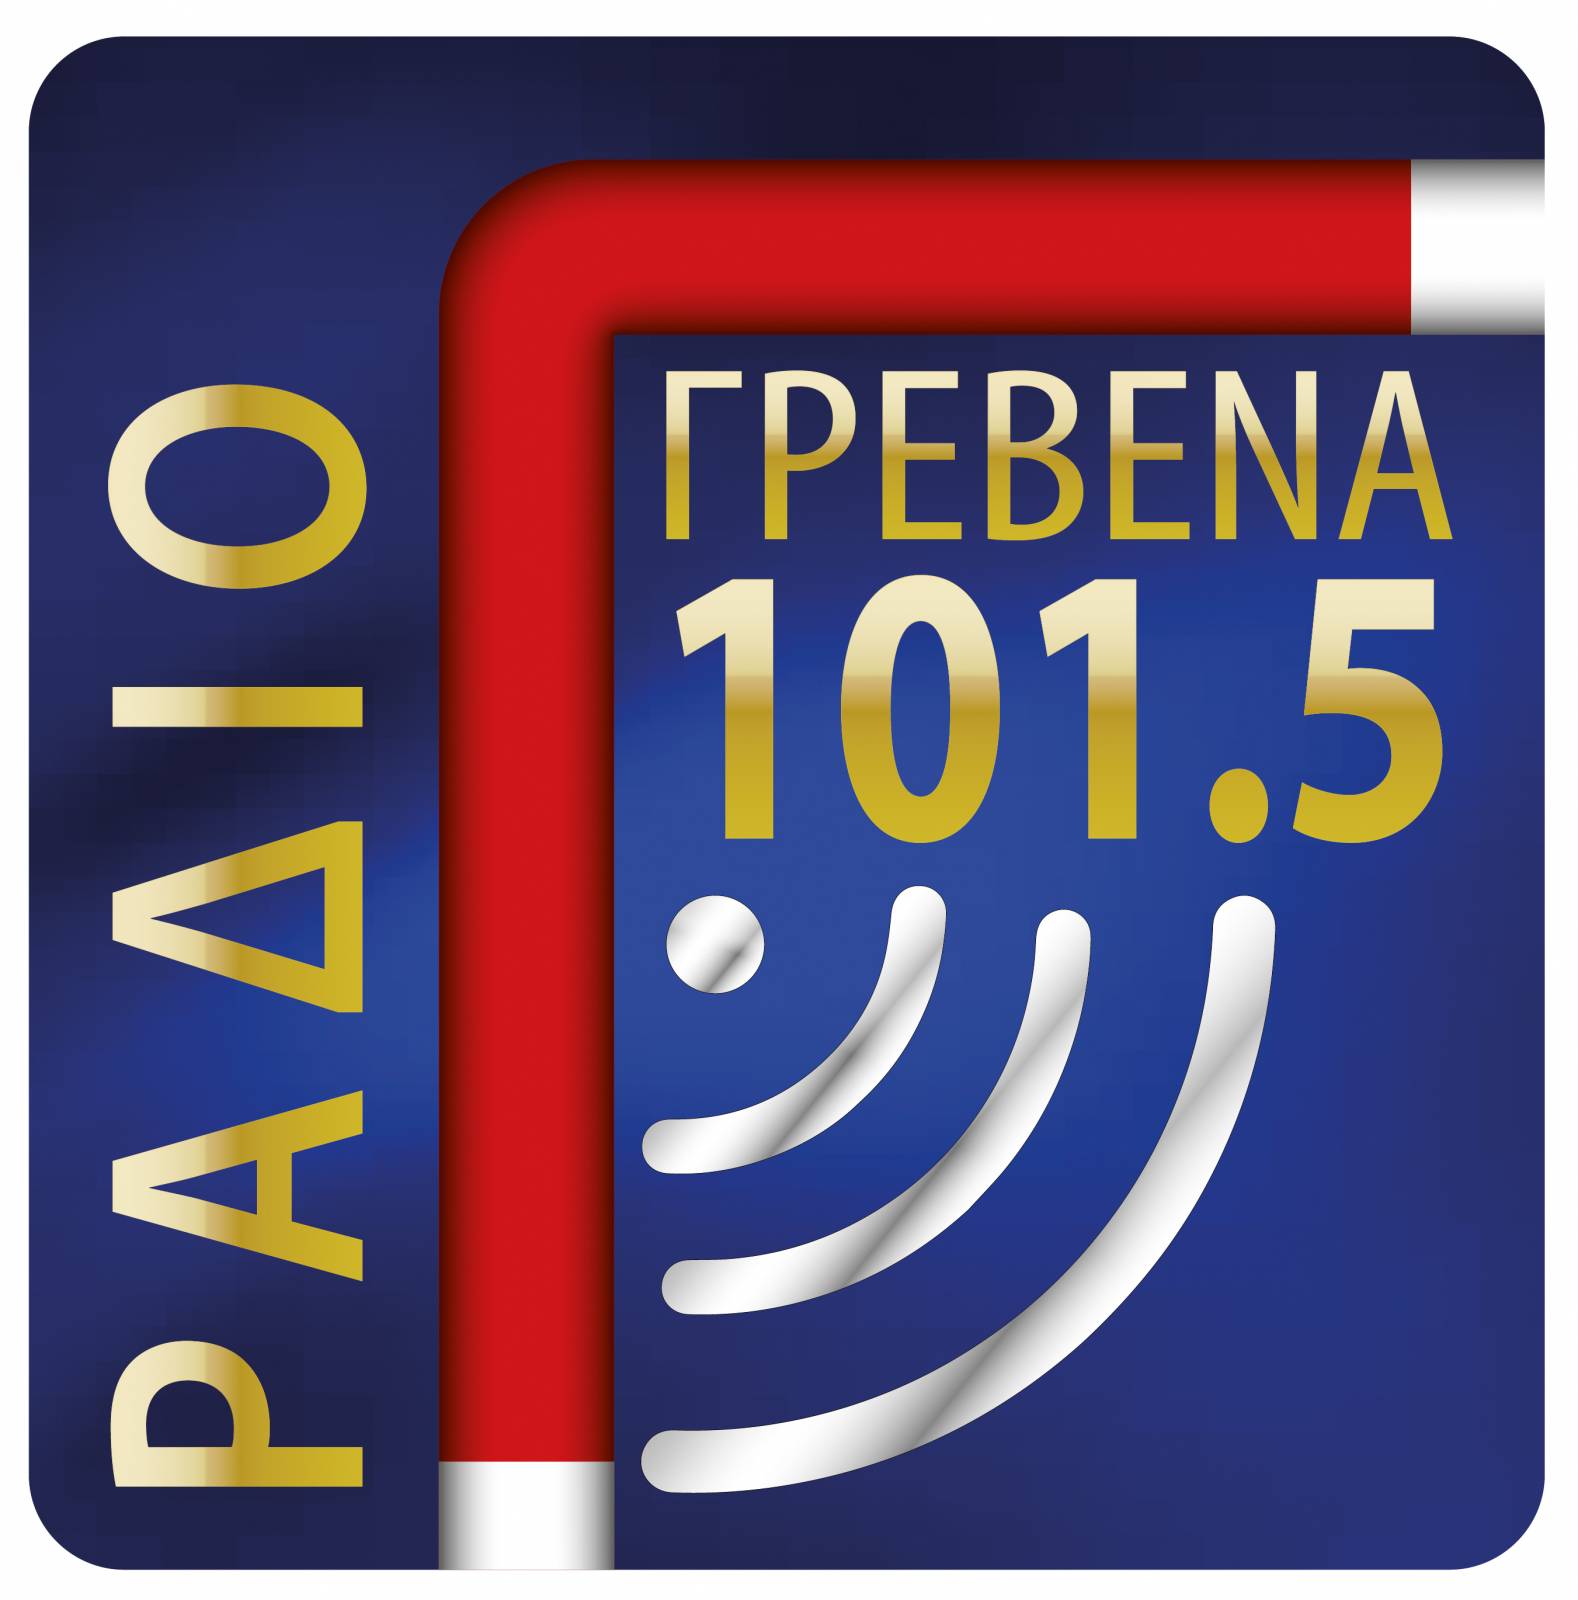 Ράδιο Γρεβενά 101.5: Ακούστε live